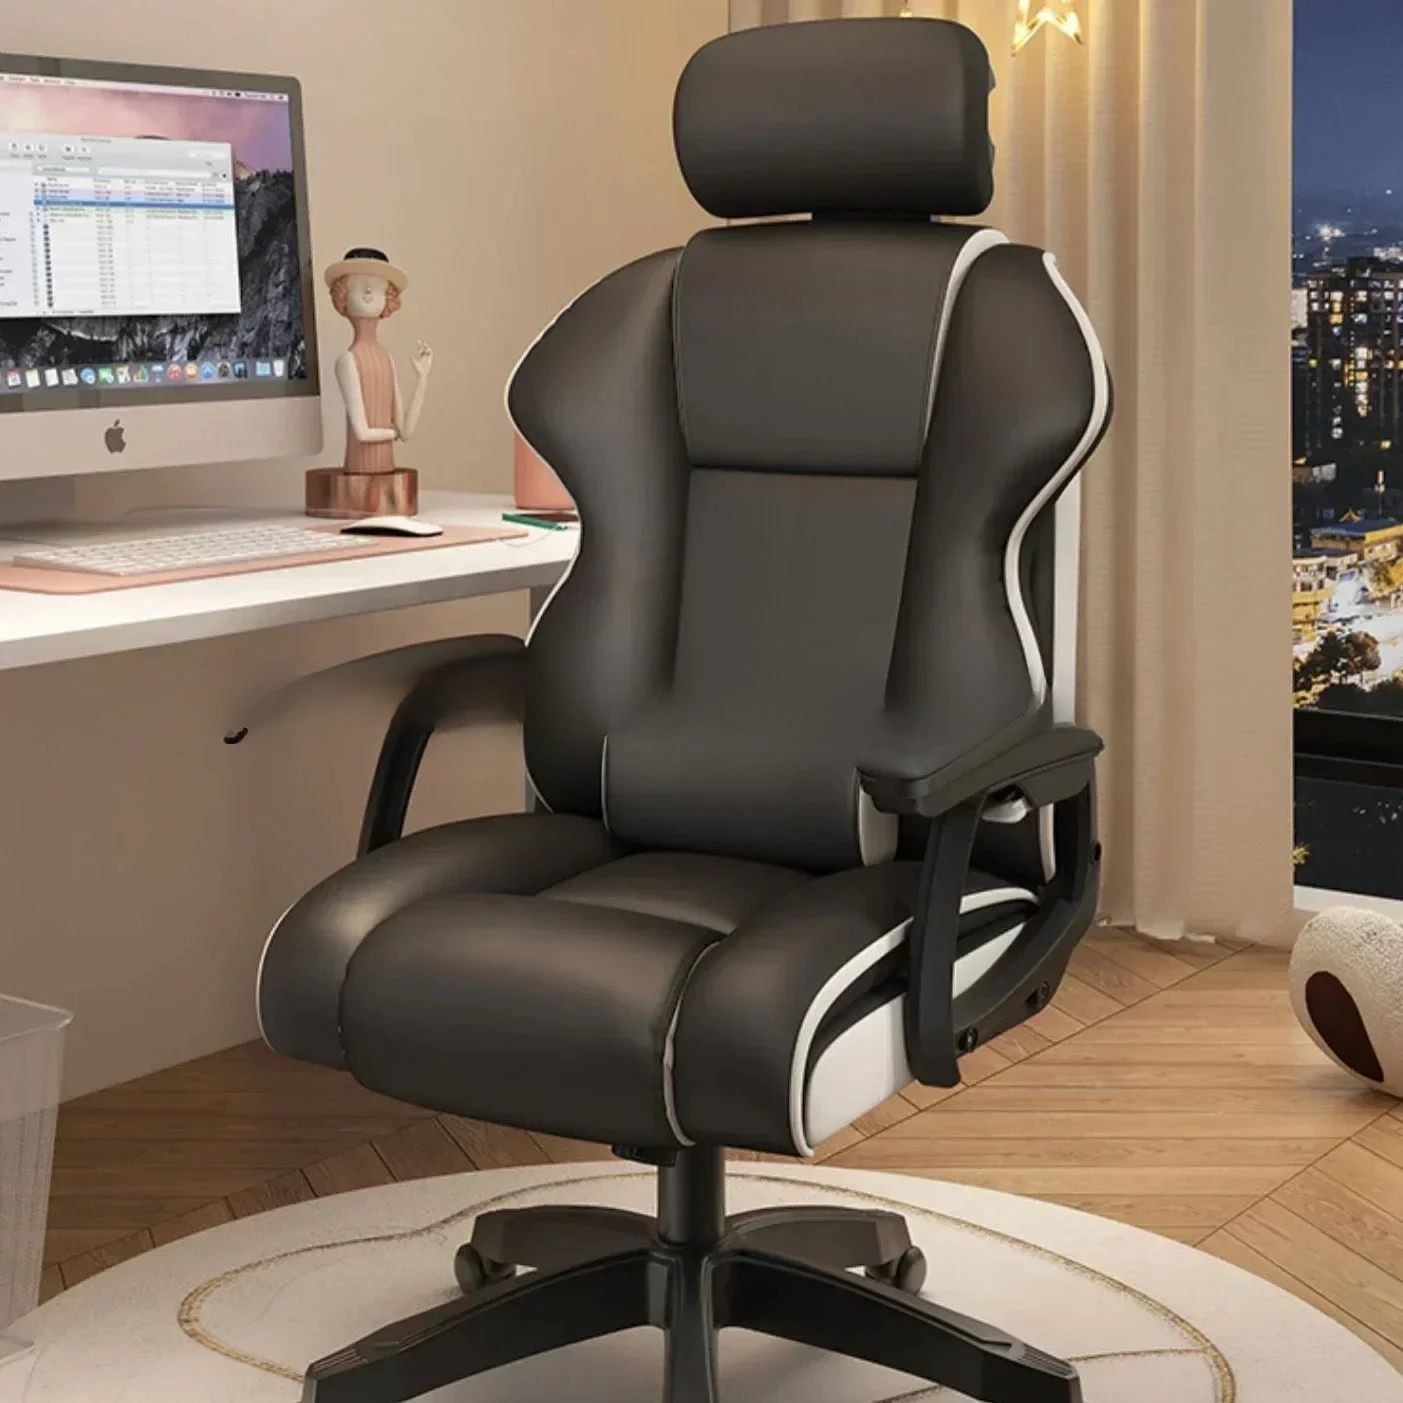 

Ленивые студенческие Офисные стулья для киберспорта, игровые вращающиеся офисные стулья для сидения, удобная компьютерная мебель